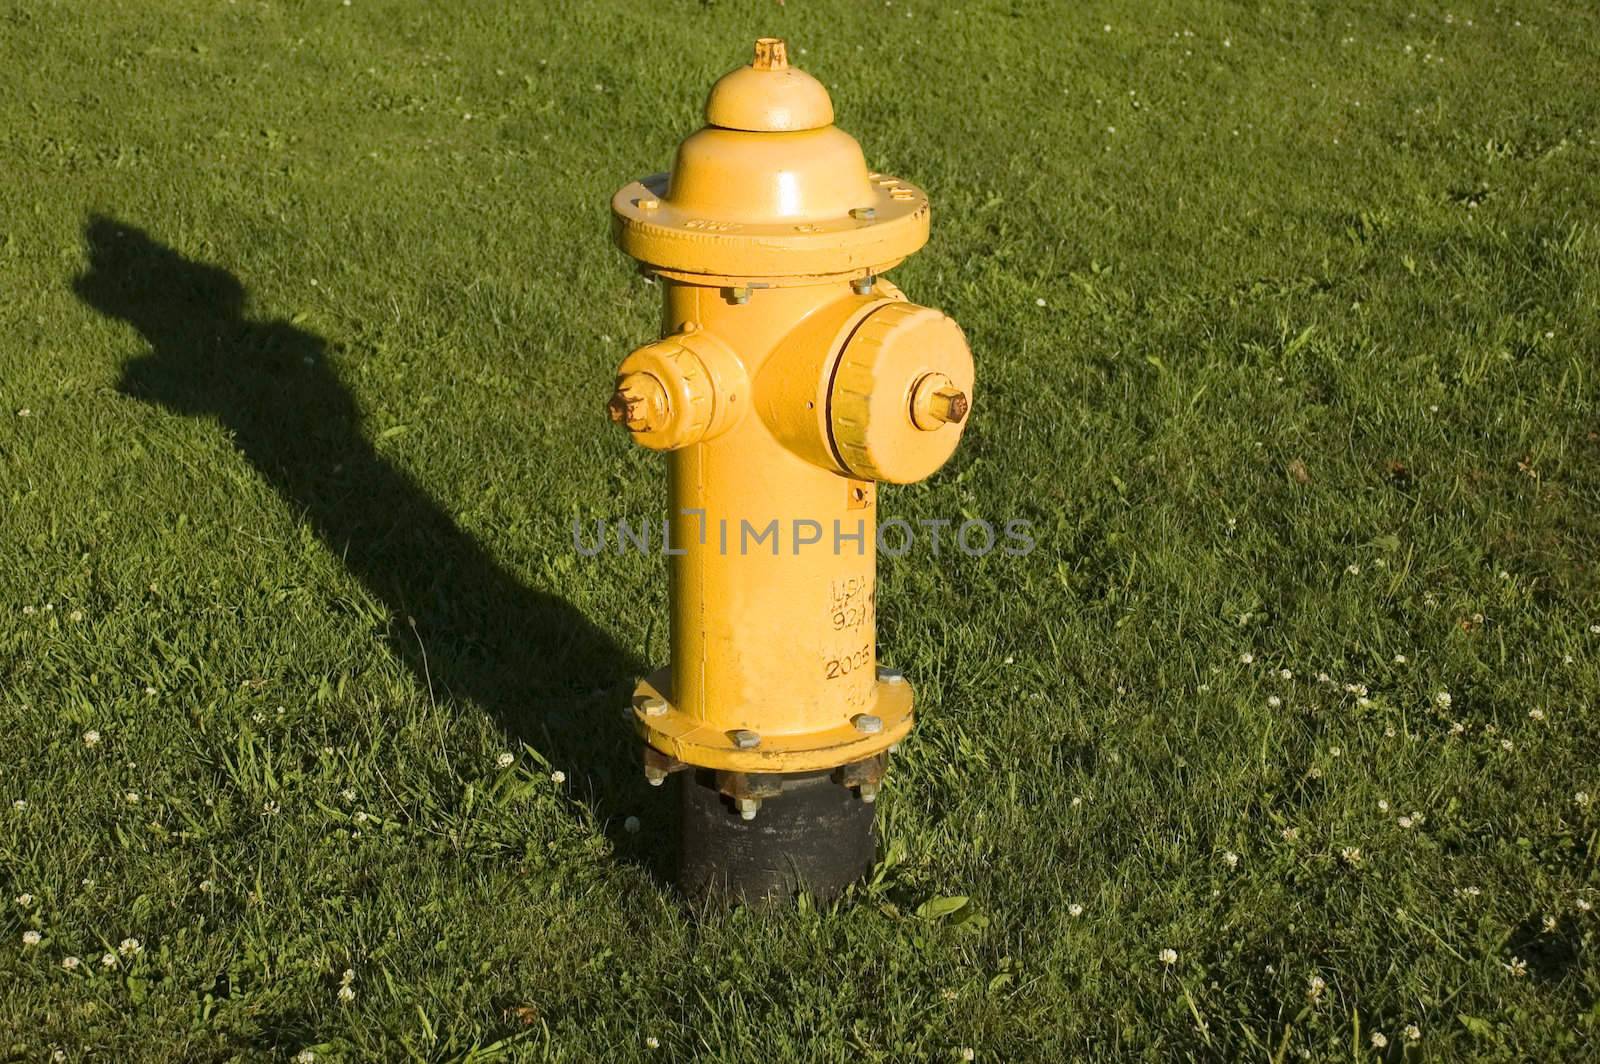 Yellow Fire Hydrant by suwanneeredhead